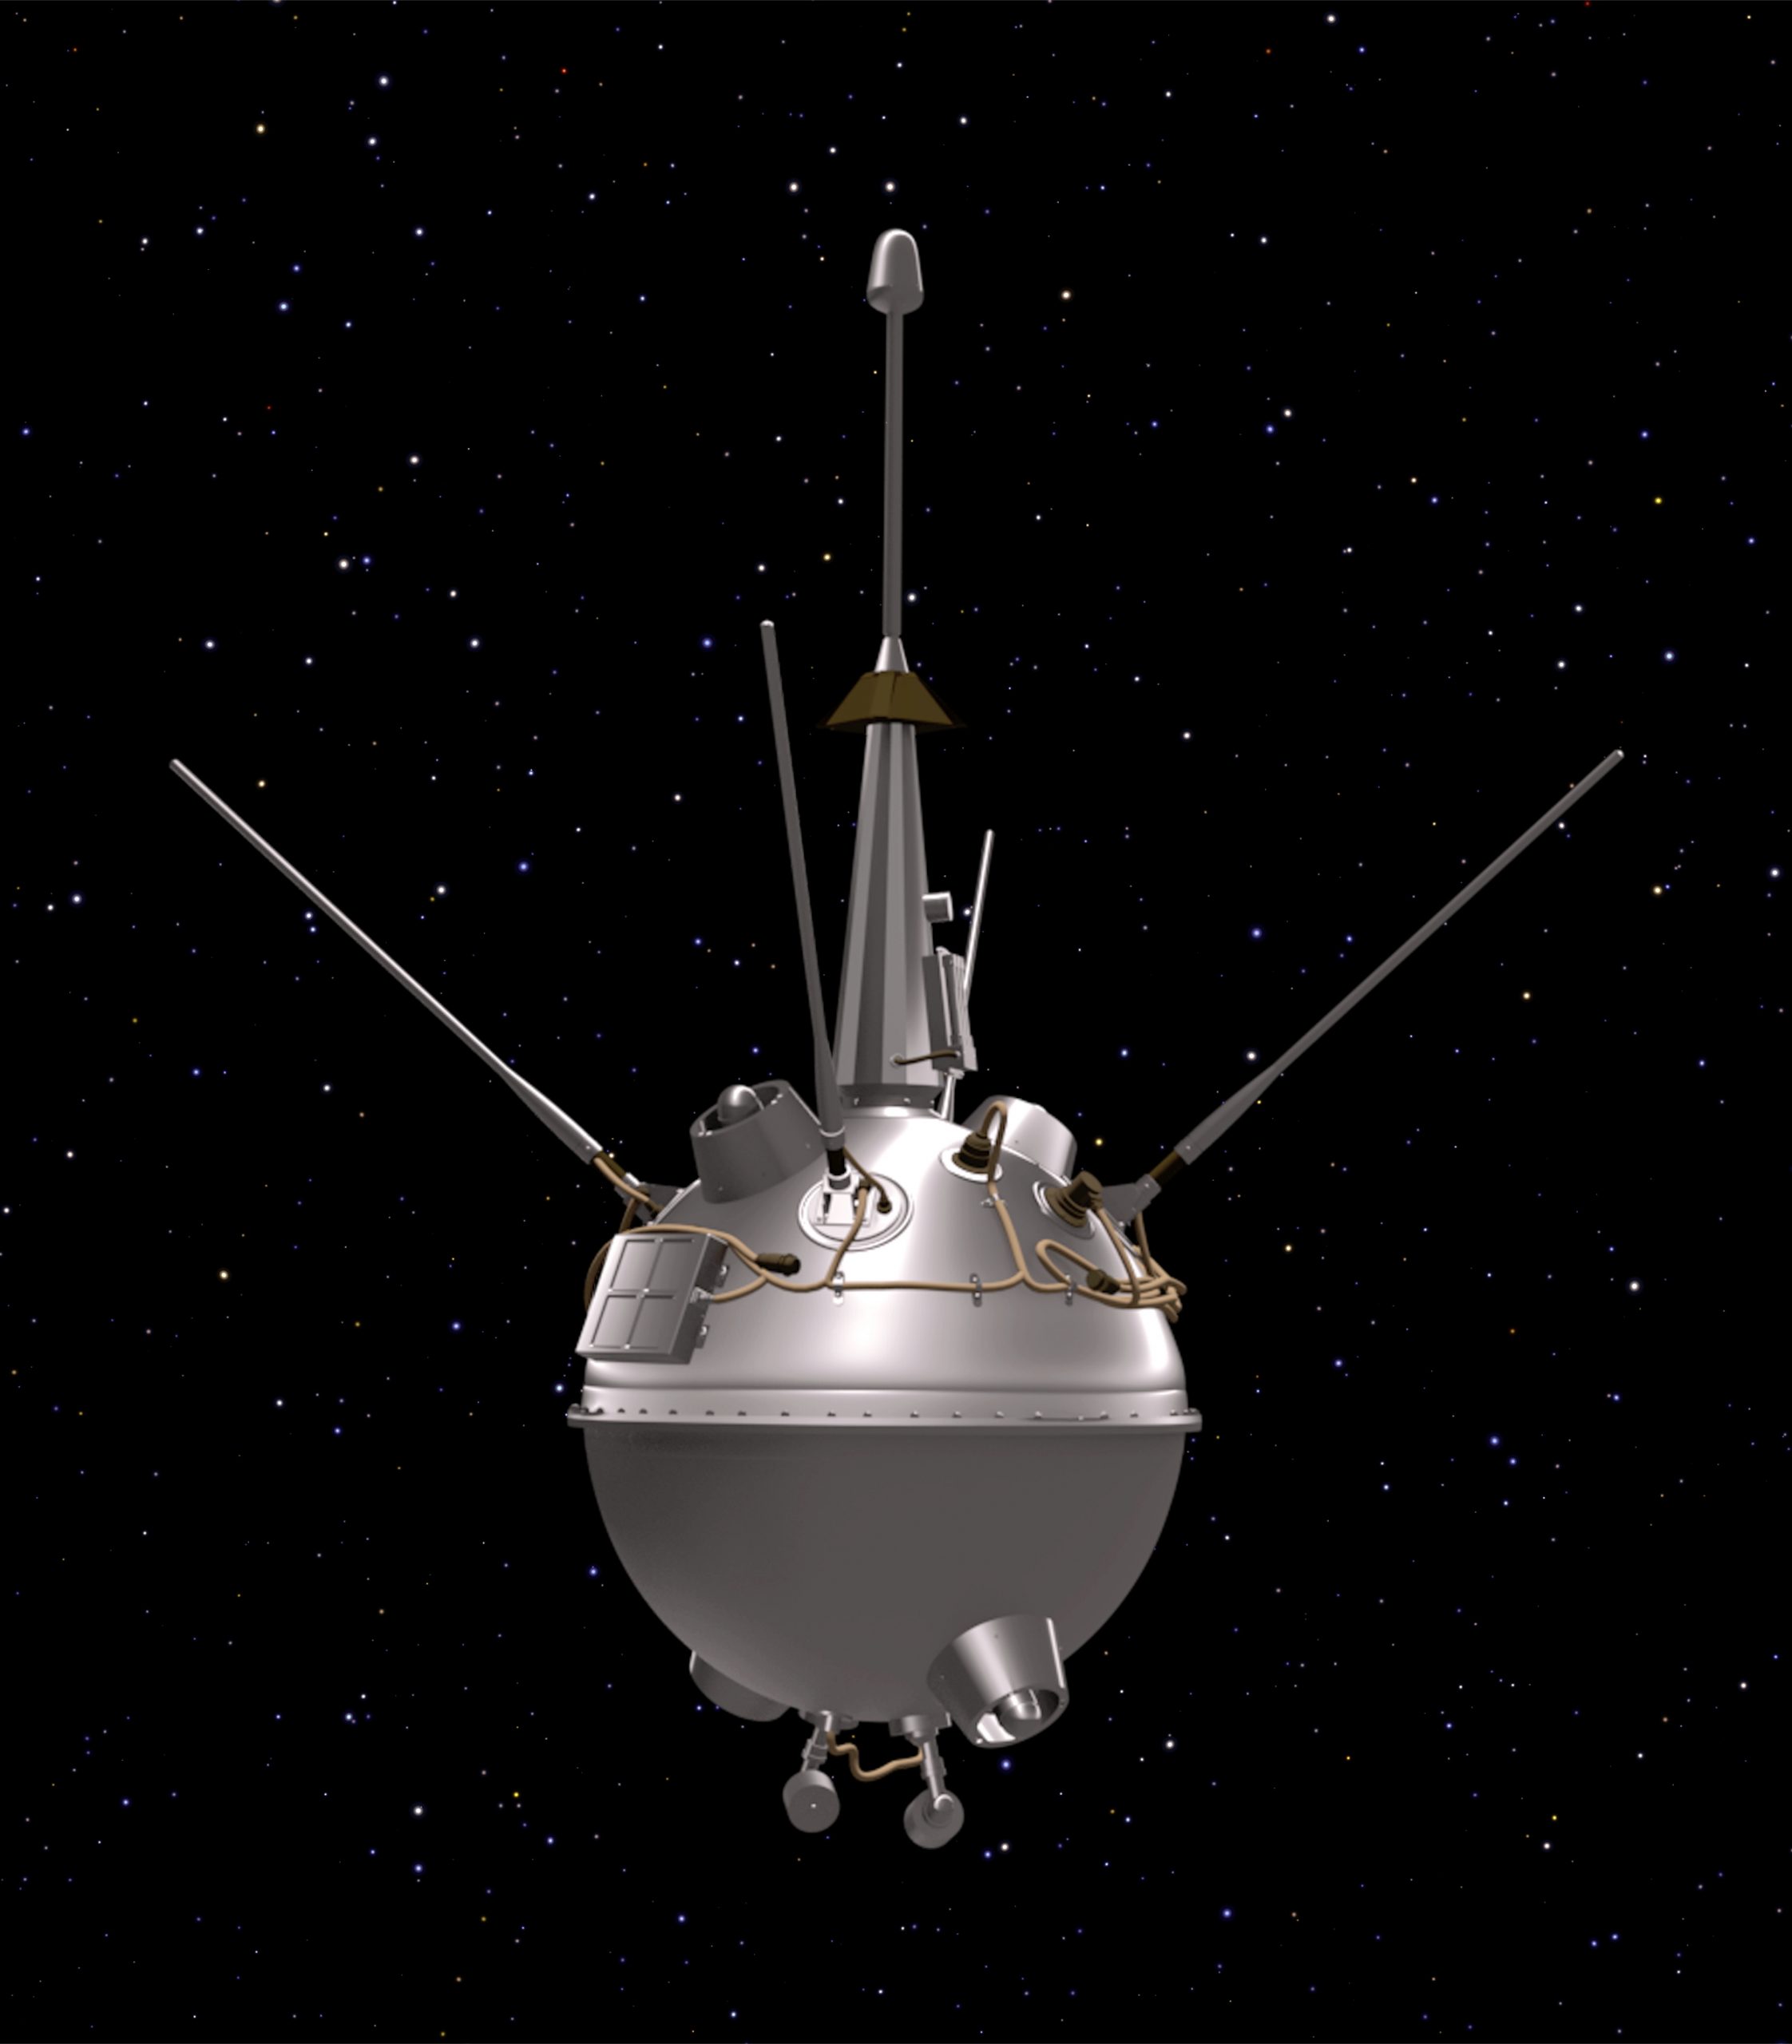 Иллюстрация зонда Луна-2. Изображение предоставлено: НАСА/NSSDCA.